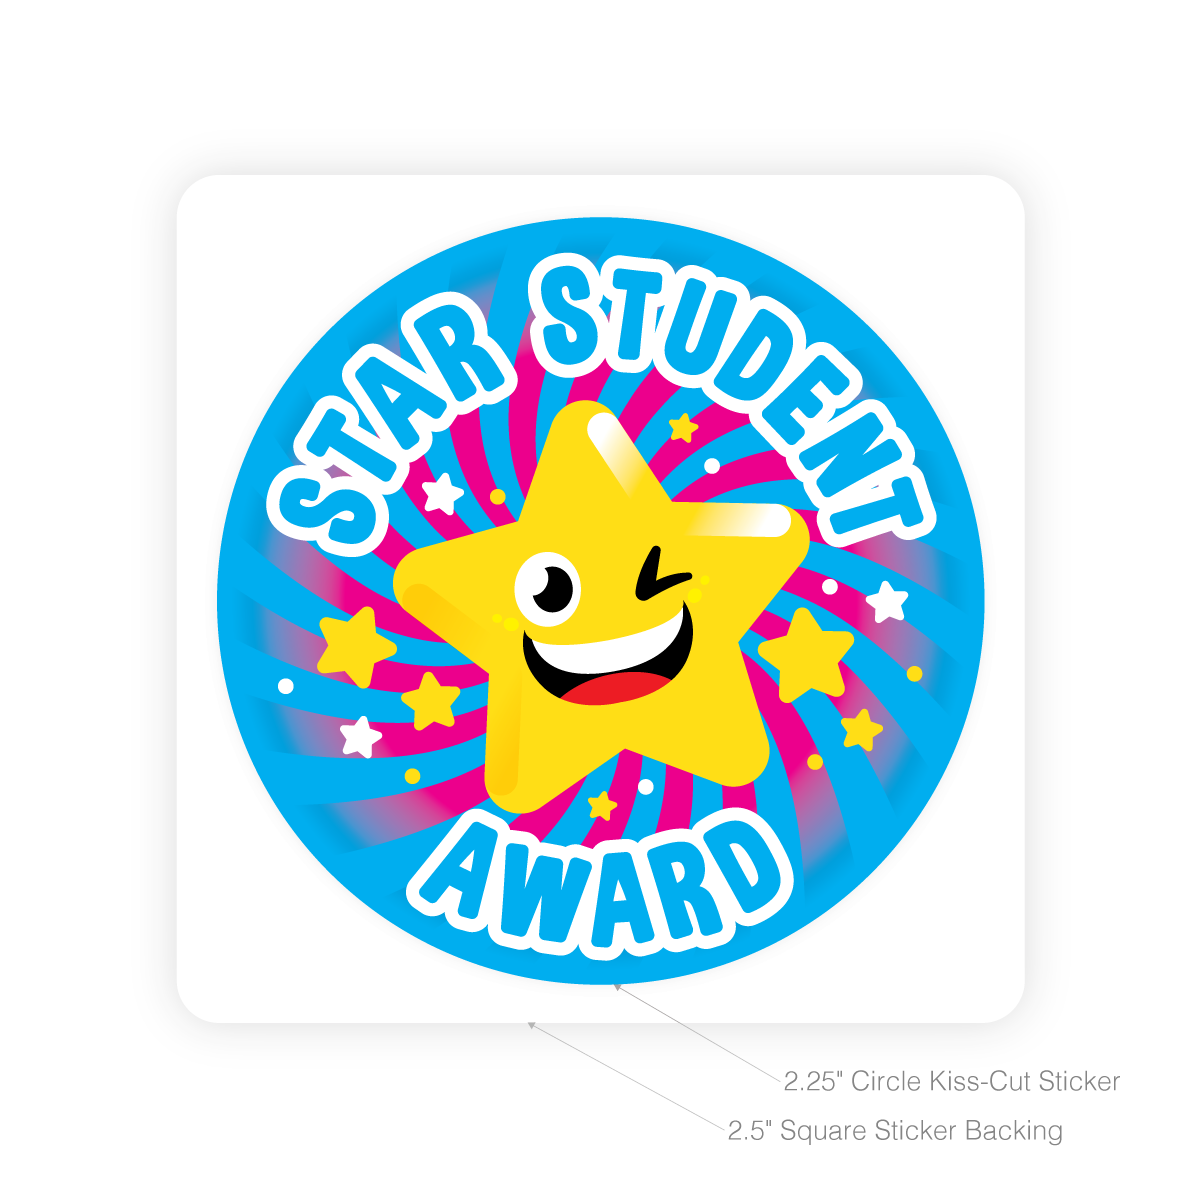 Chia sẻ với hơn 73+ sticker star đẹp nhất - ACTV EDU